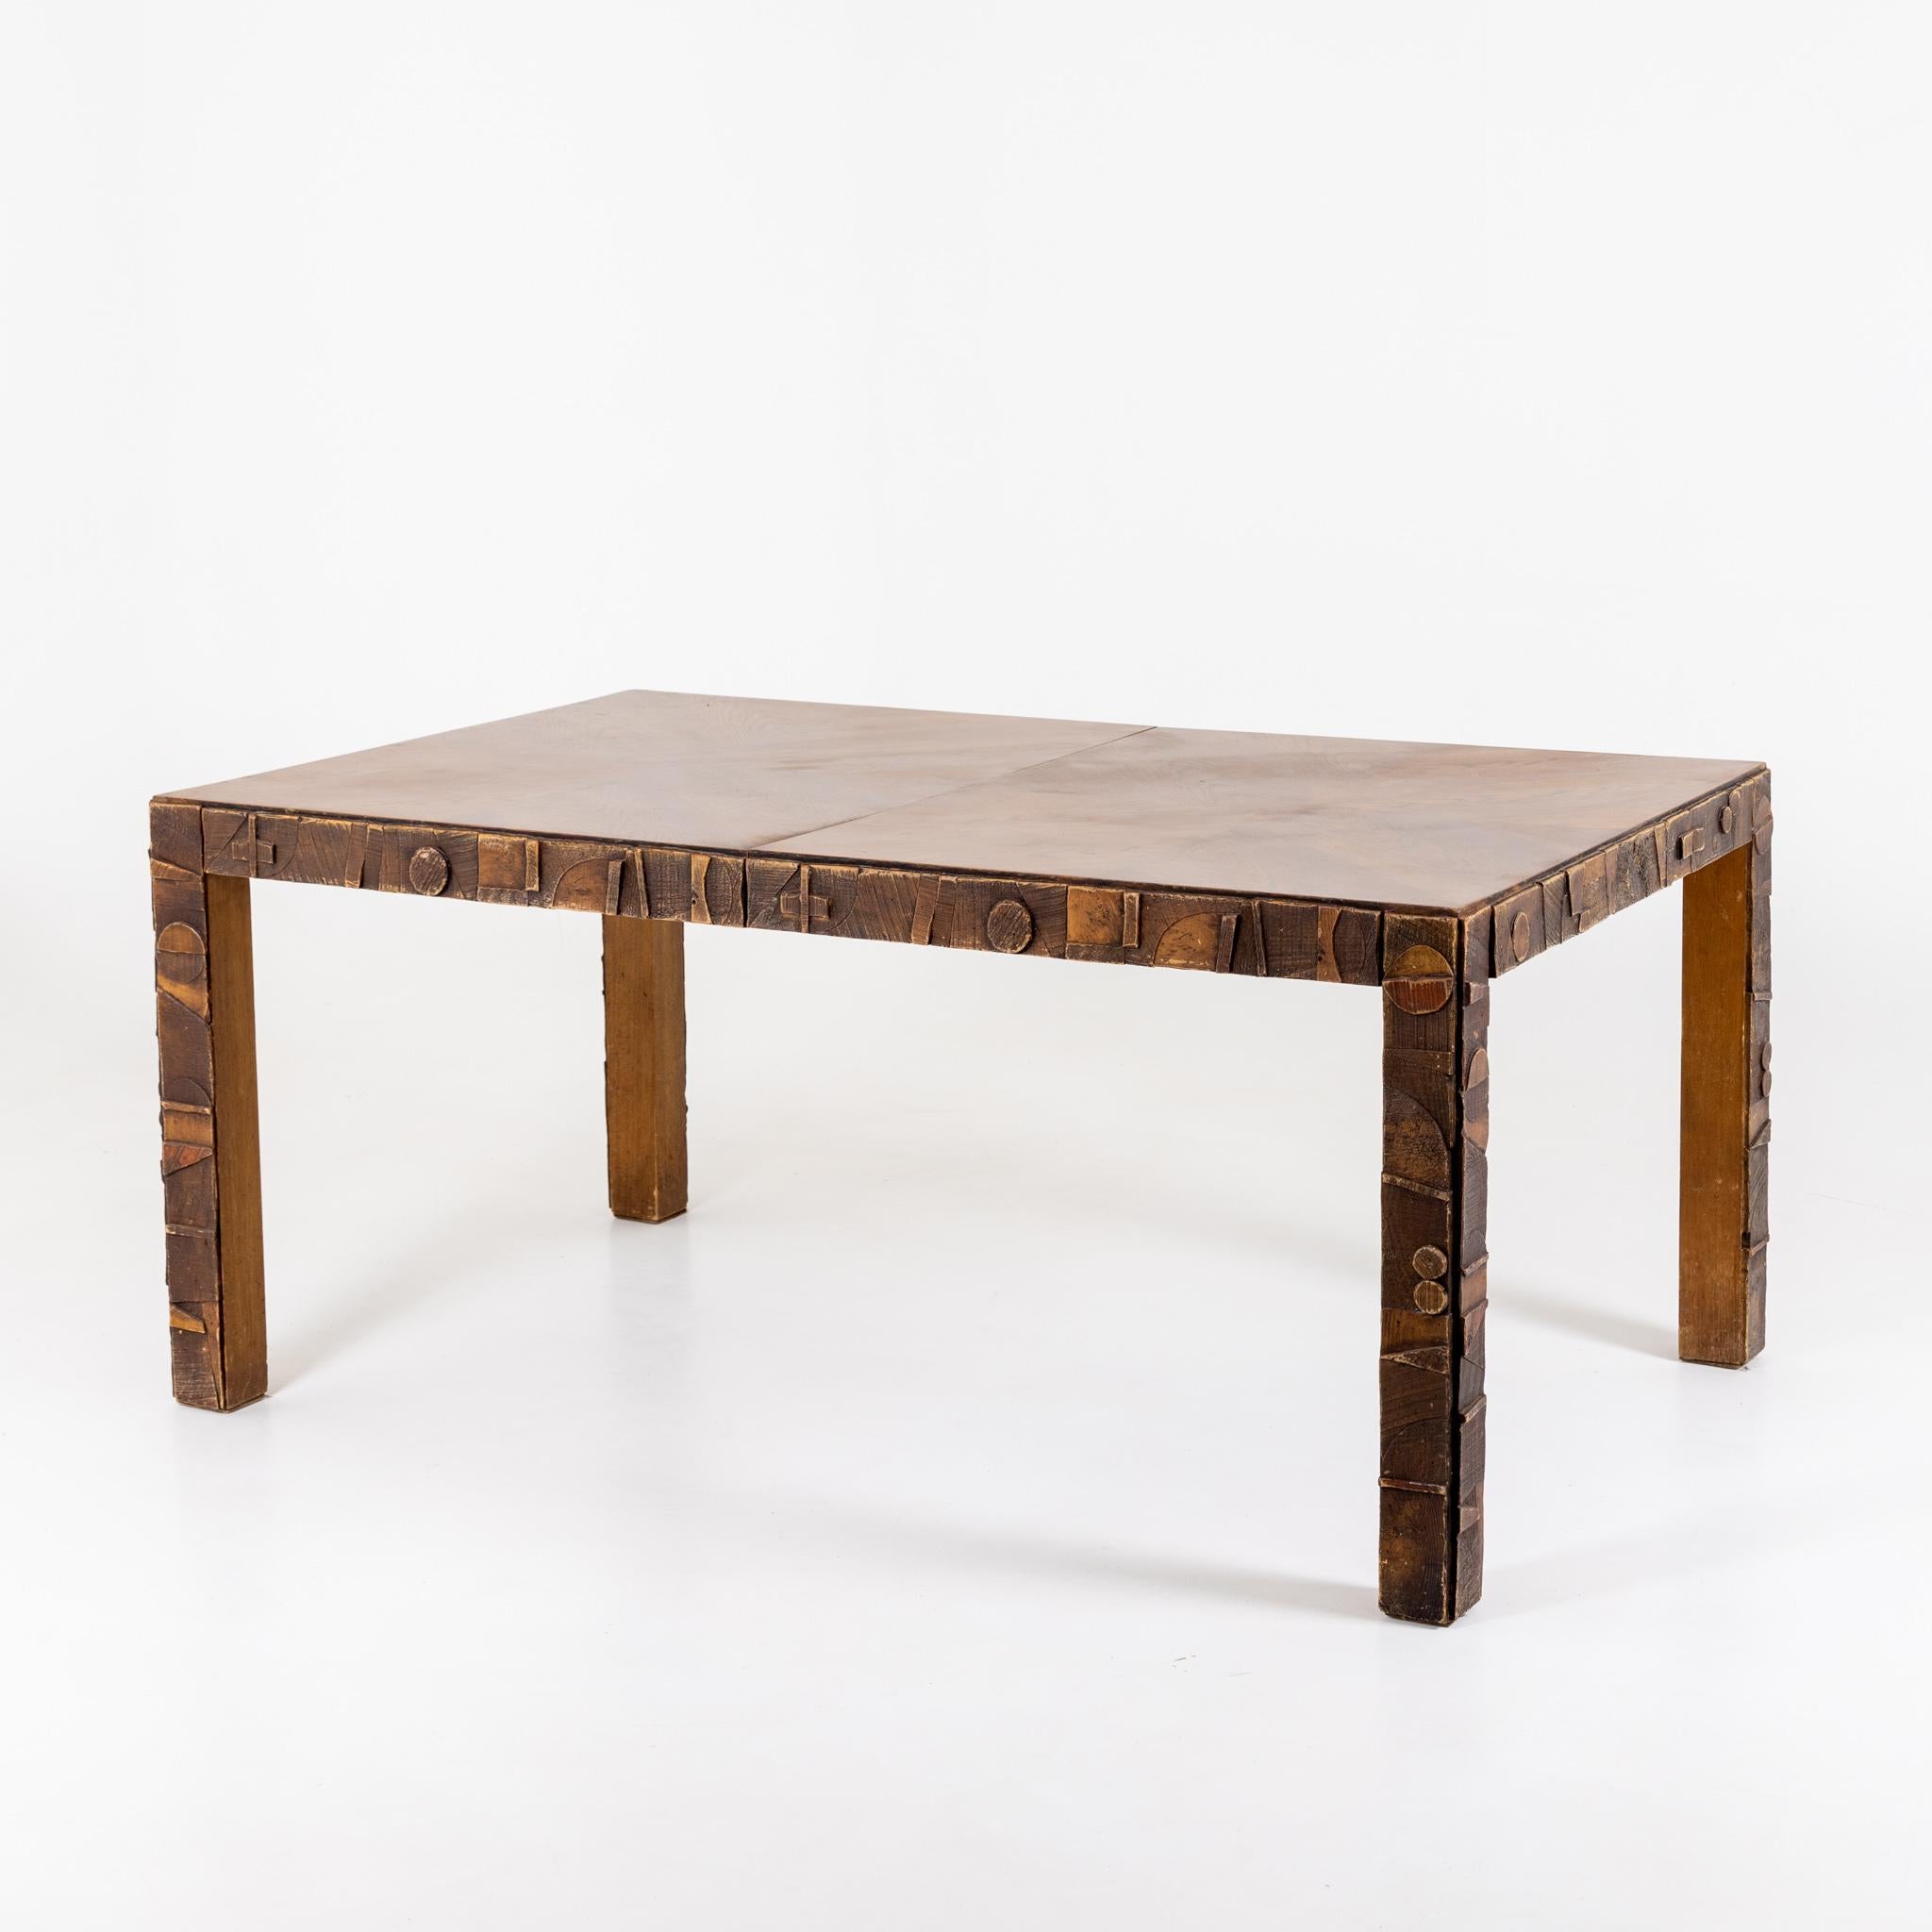 Grande table de salle à manger en bois sculpté avec plateau extensible au design brutaliste. Label sur le dessous, numéroté 61901.